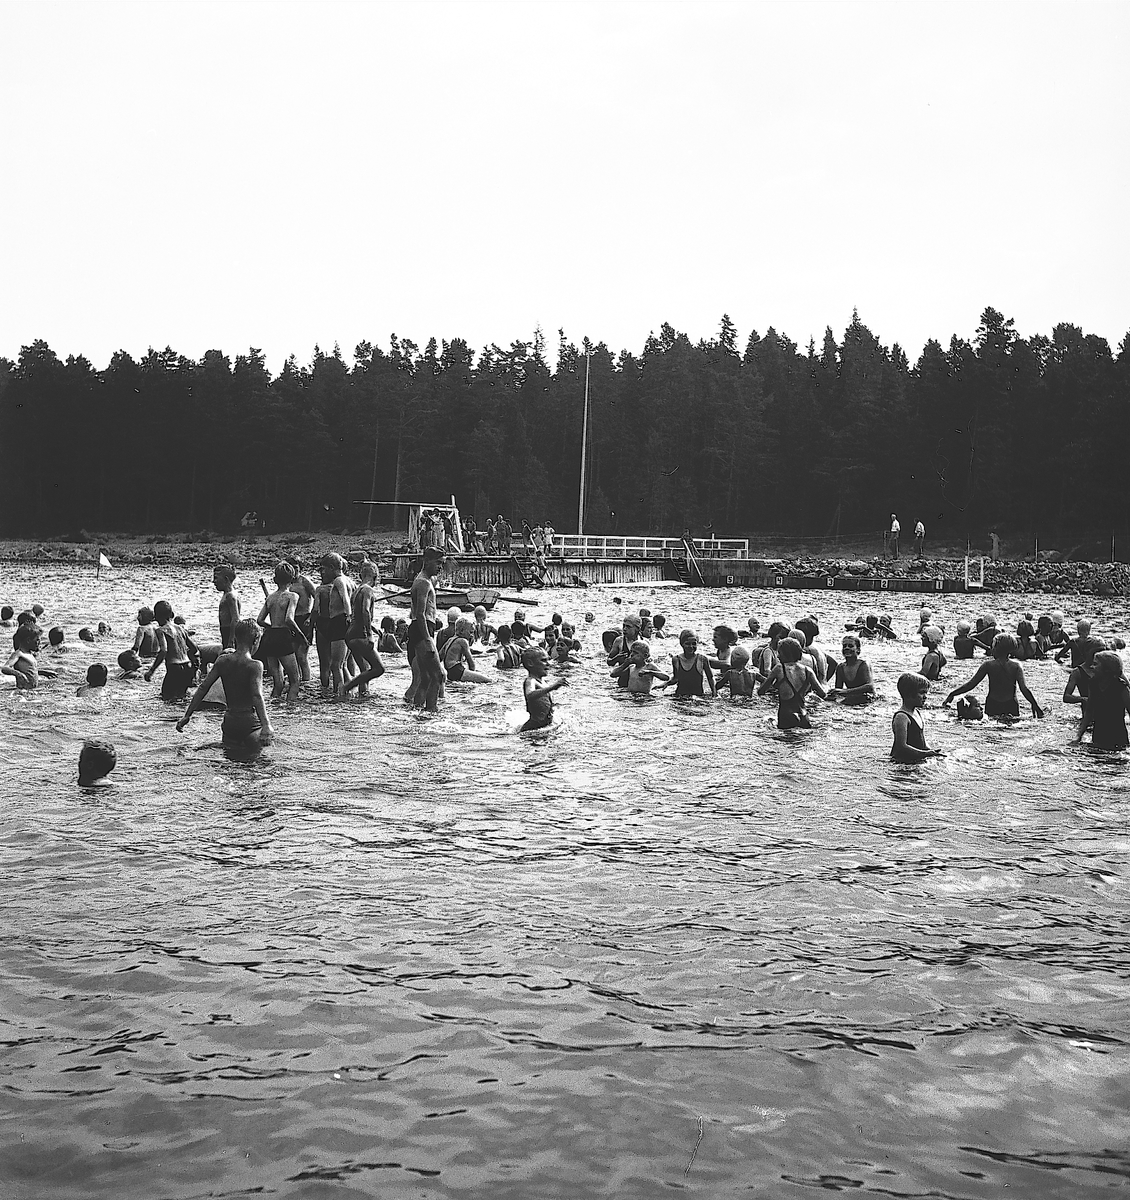 Den 23 juli 1938. Barnutflykt till Furuvik. Reportage för Gefle-Posten

